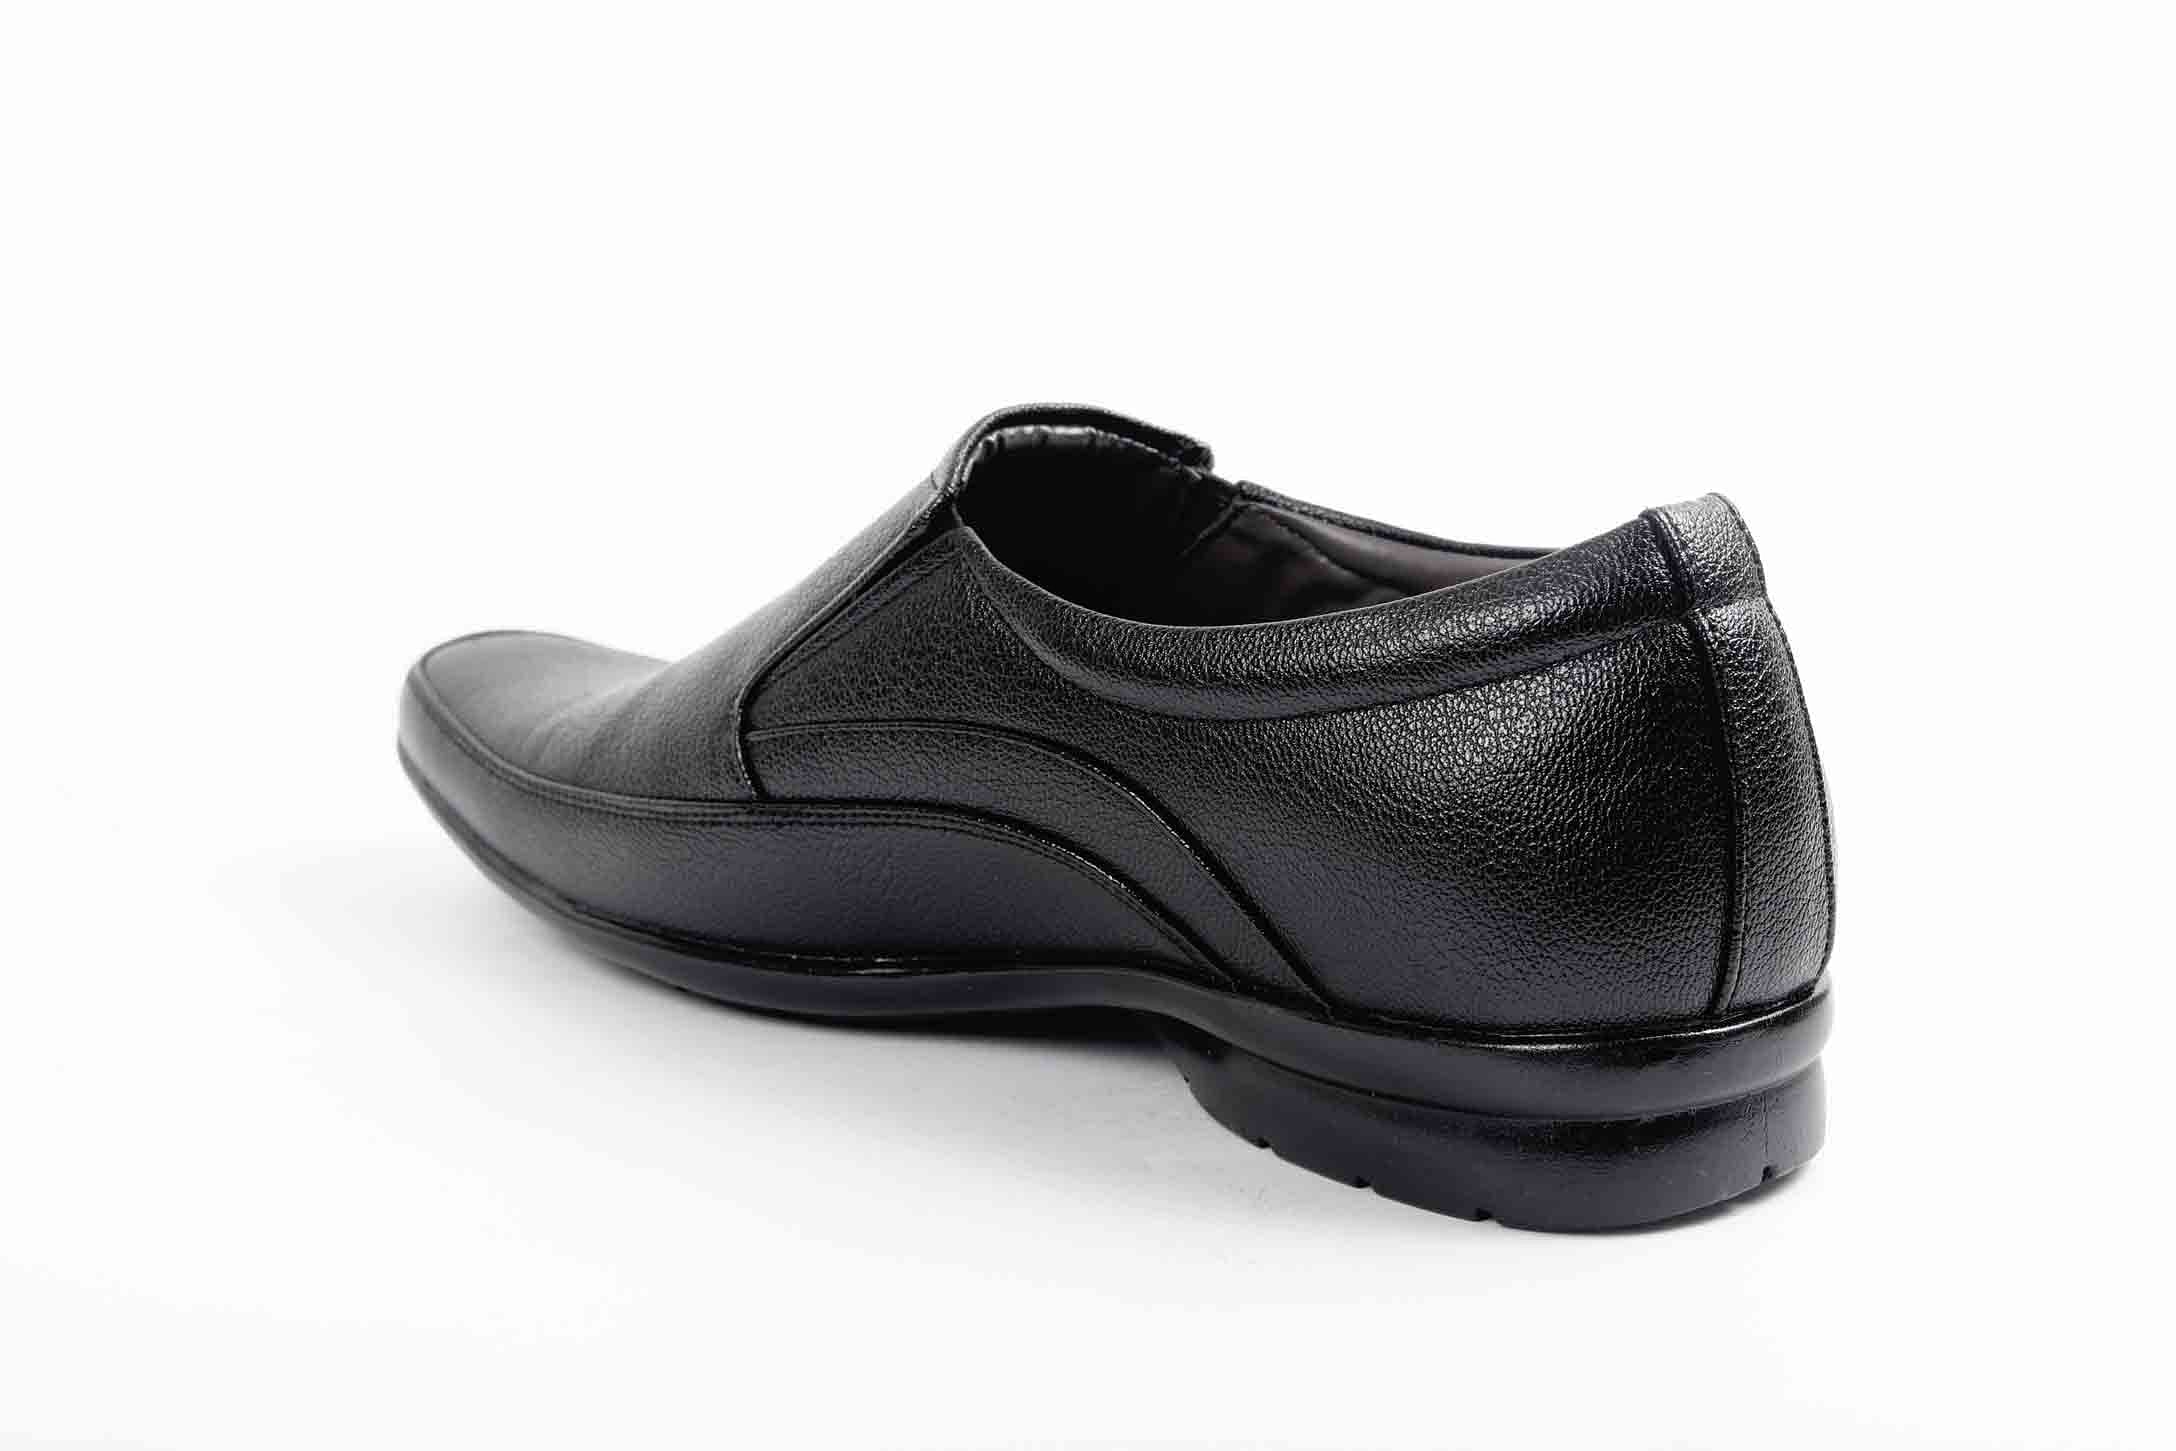 Pair-it Men moccasin Formal Shoes - Black LZ-RYDER106